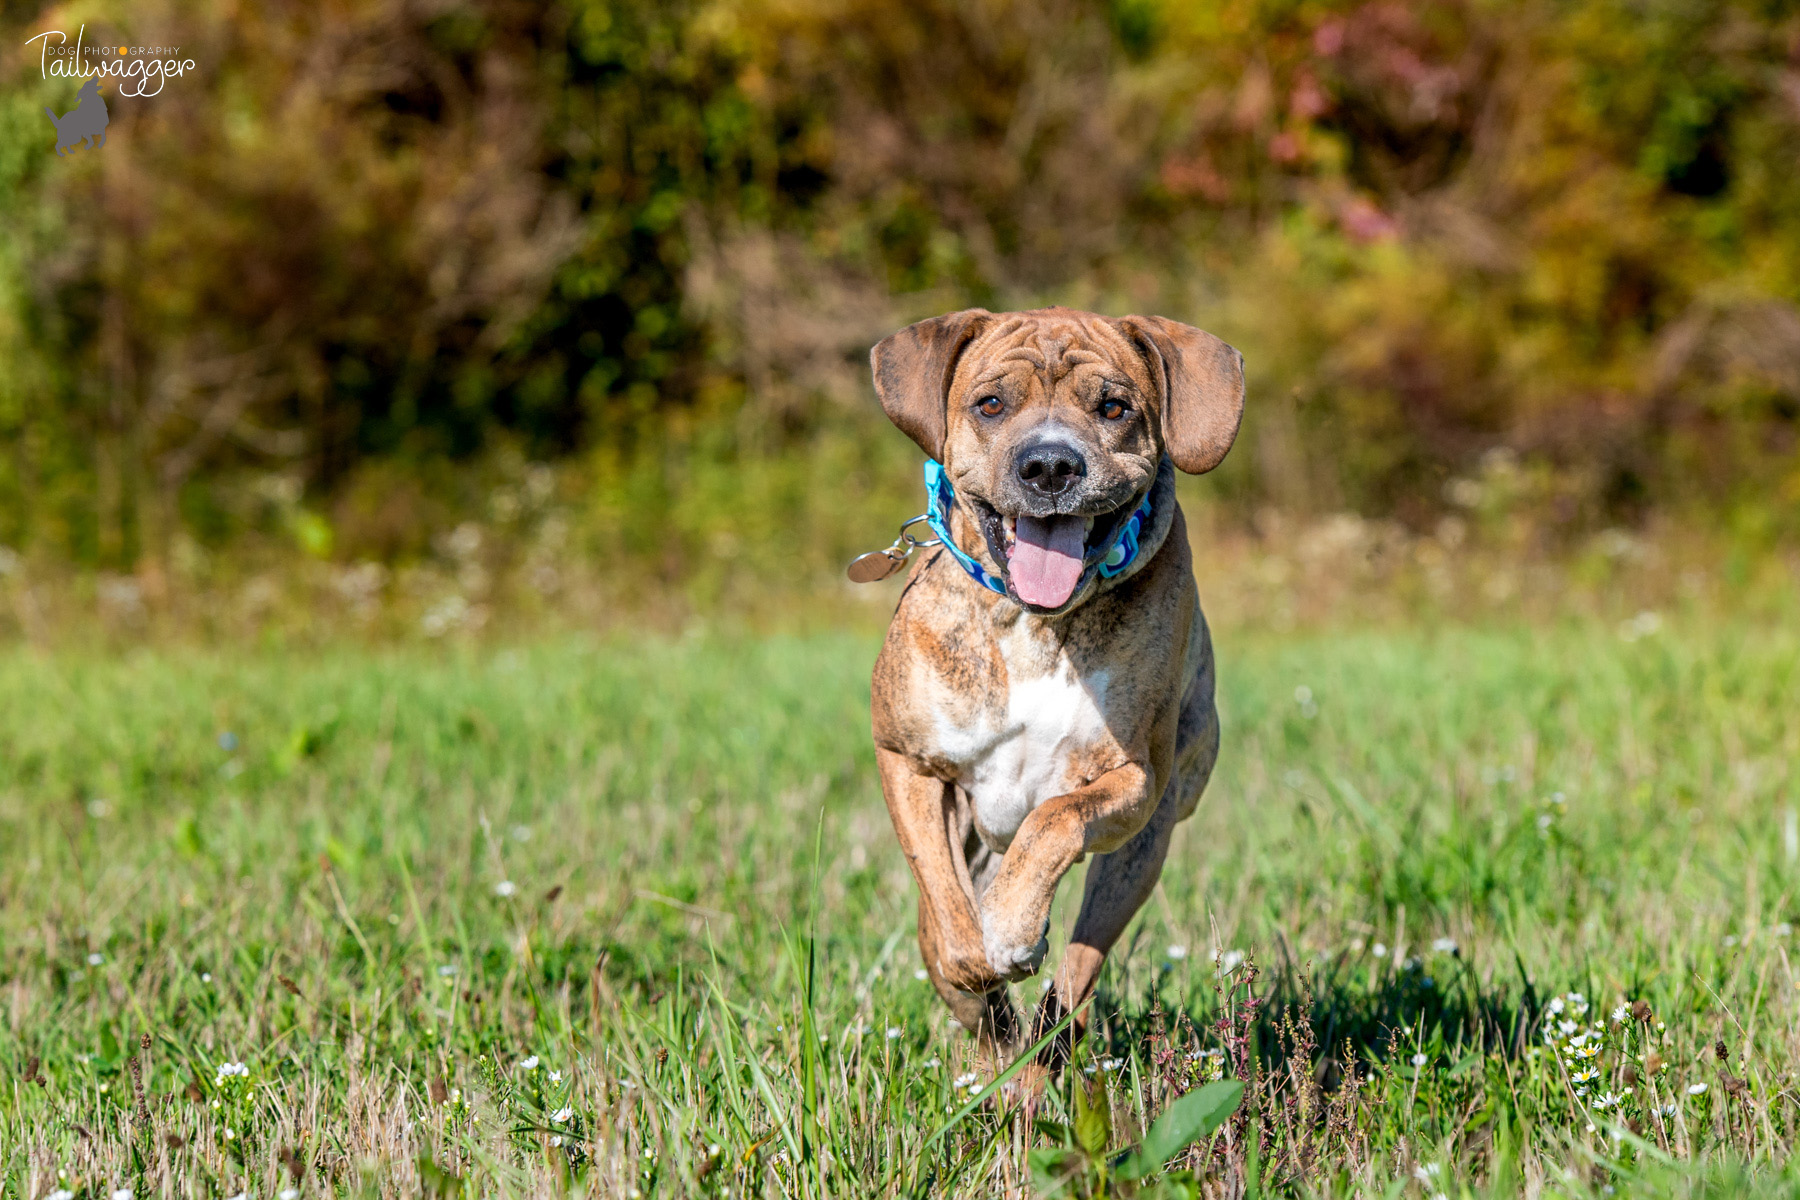 A Shar Pei, Boxer, Lab and Beagle mix runs through a field.